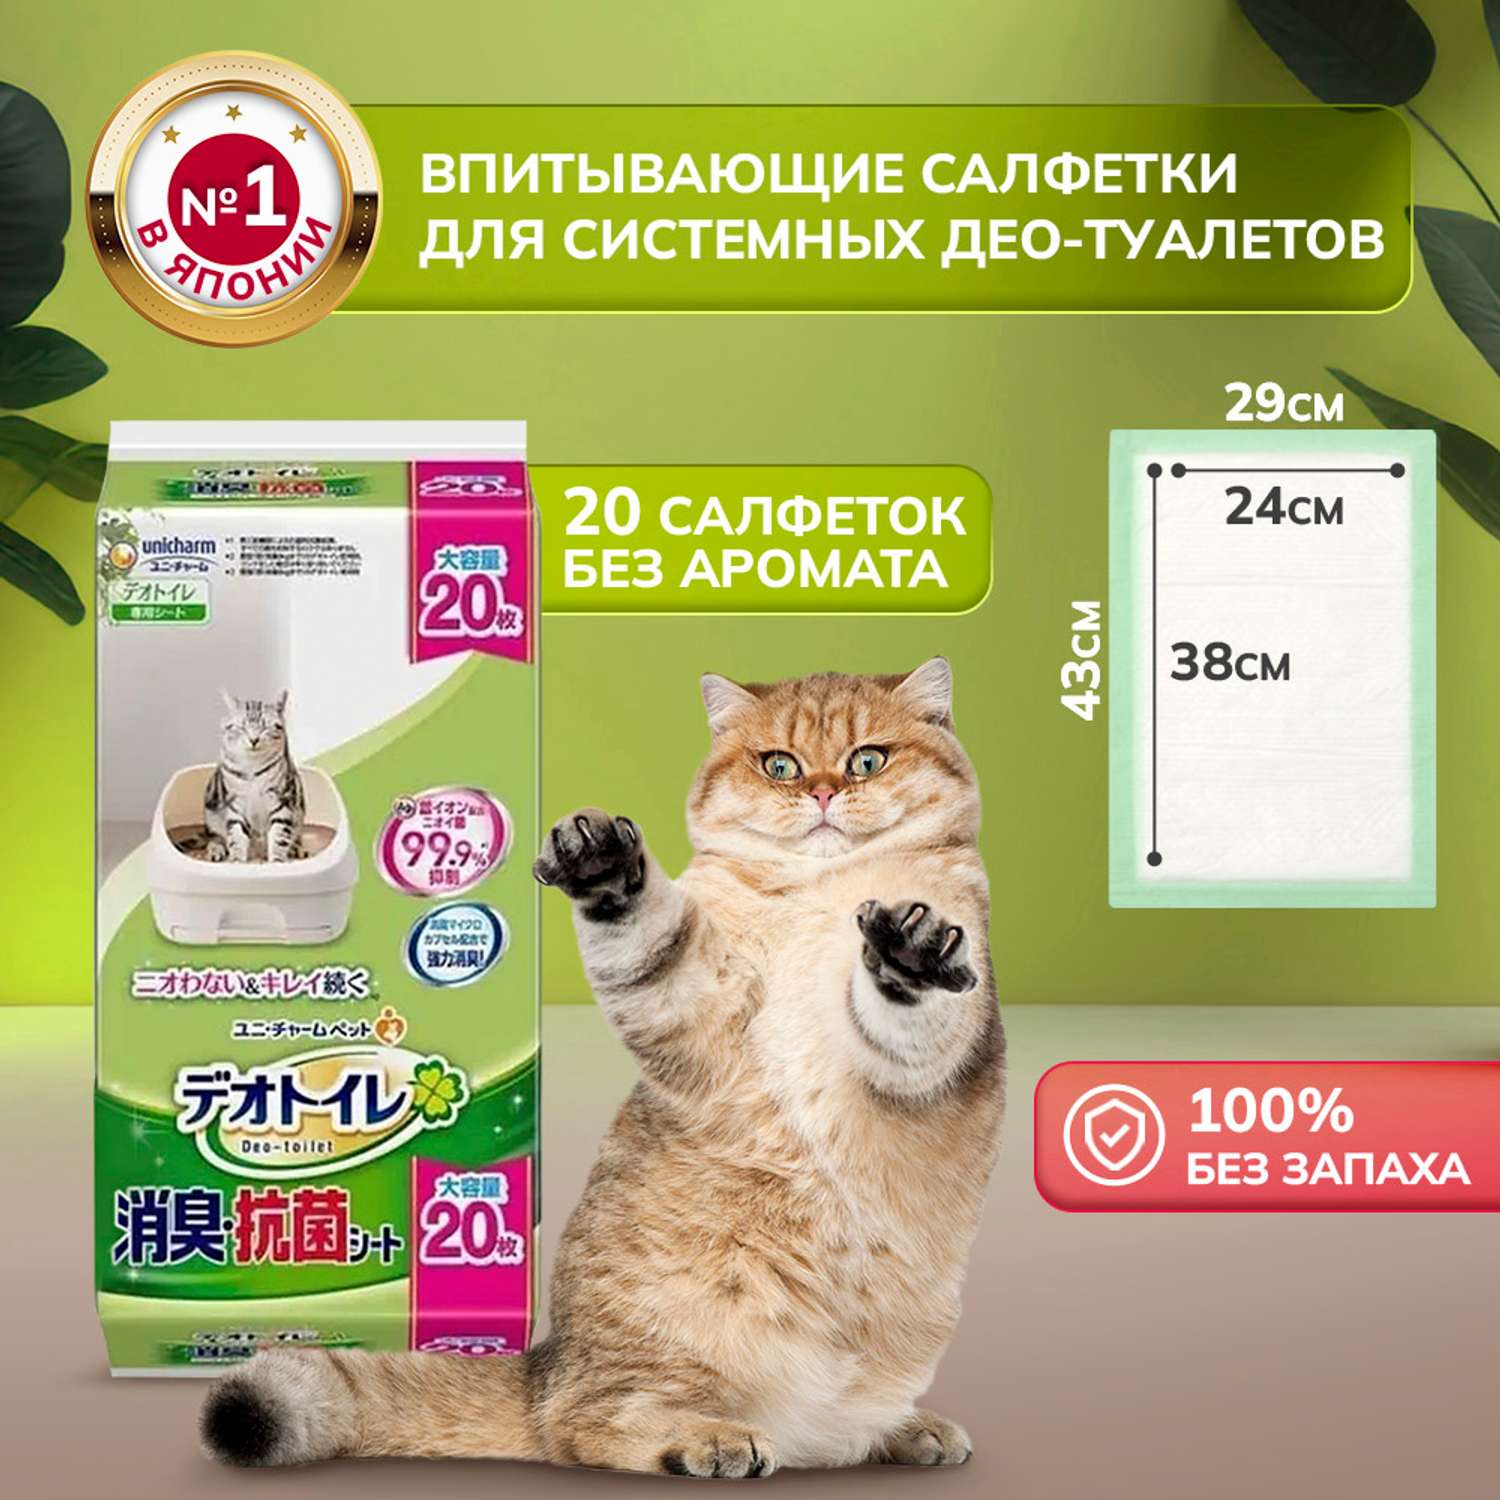 Антибактериальная салфетка Unicharm DeoToilet дезодорирующая для cистемных туалетов для кошек 20 шт - фото 1